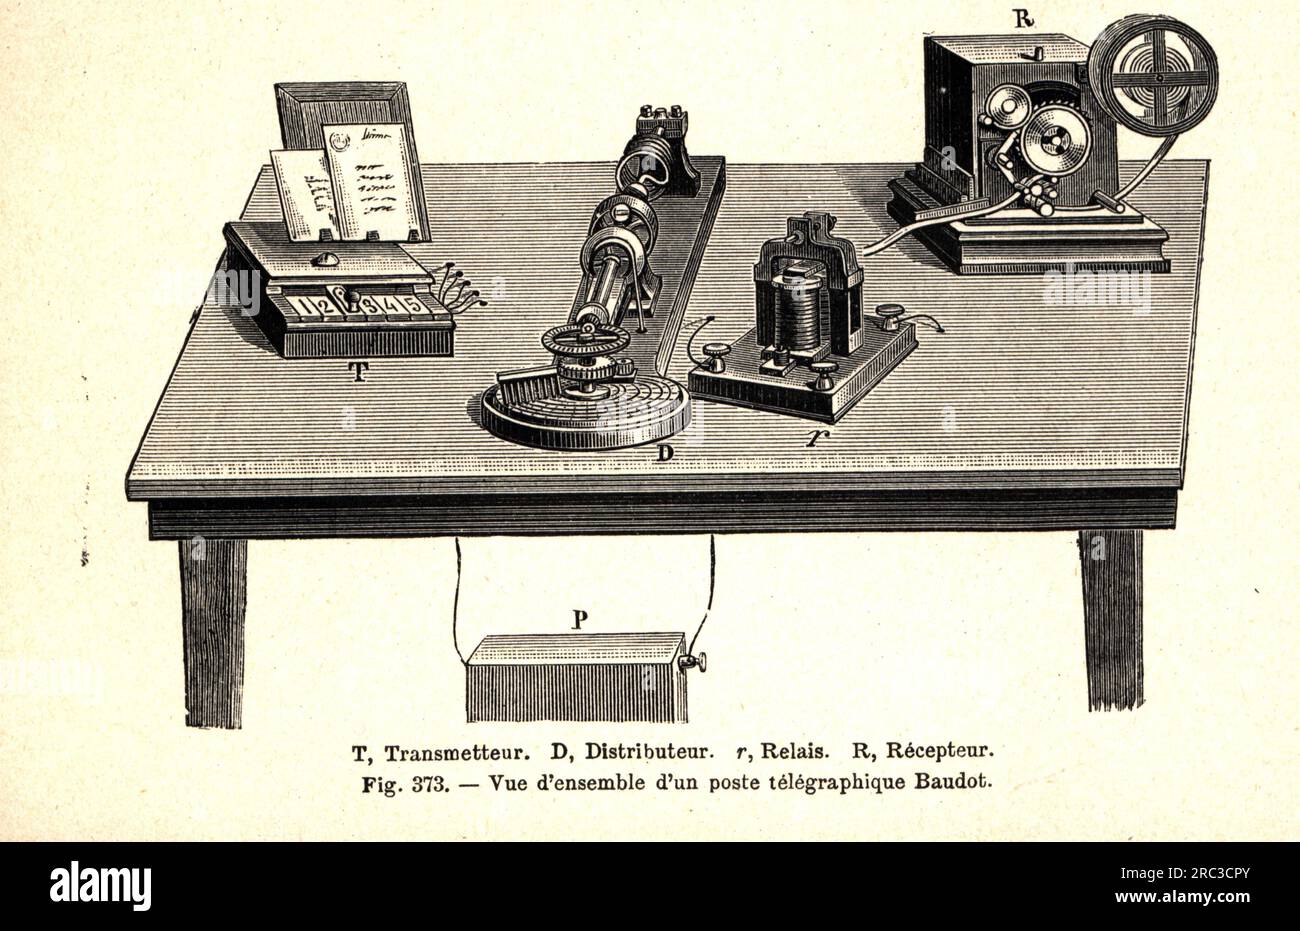 Courrier, TELEGRAPHIE, TELEGRAPHIE d'Emile Baudot, 1874, gravure sur bois, fin du 19e siècle, LE DROIT D'AUTEUR N'EST PAS À EFFACER Banque D'Images